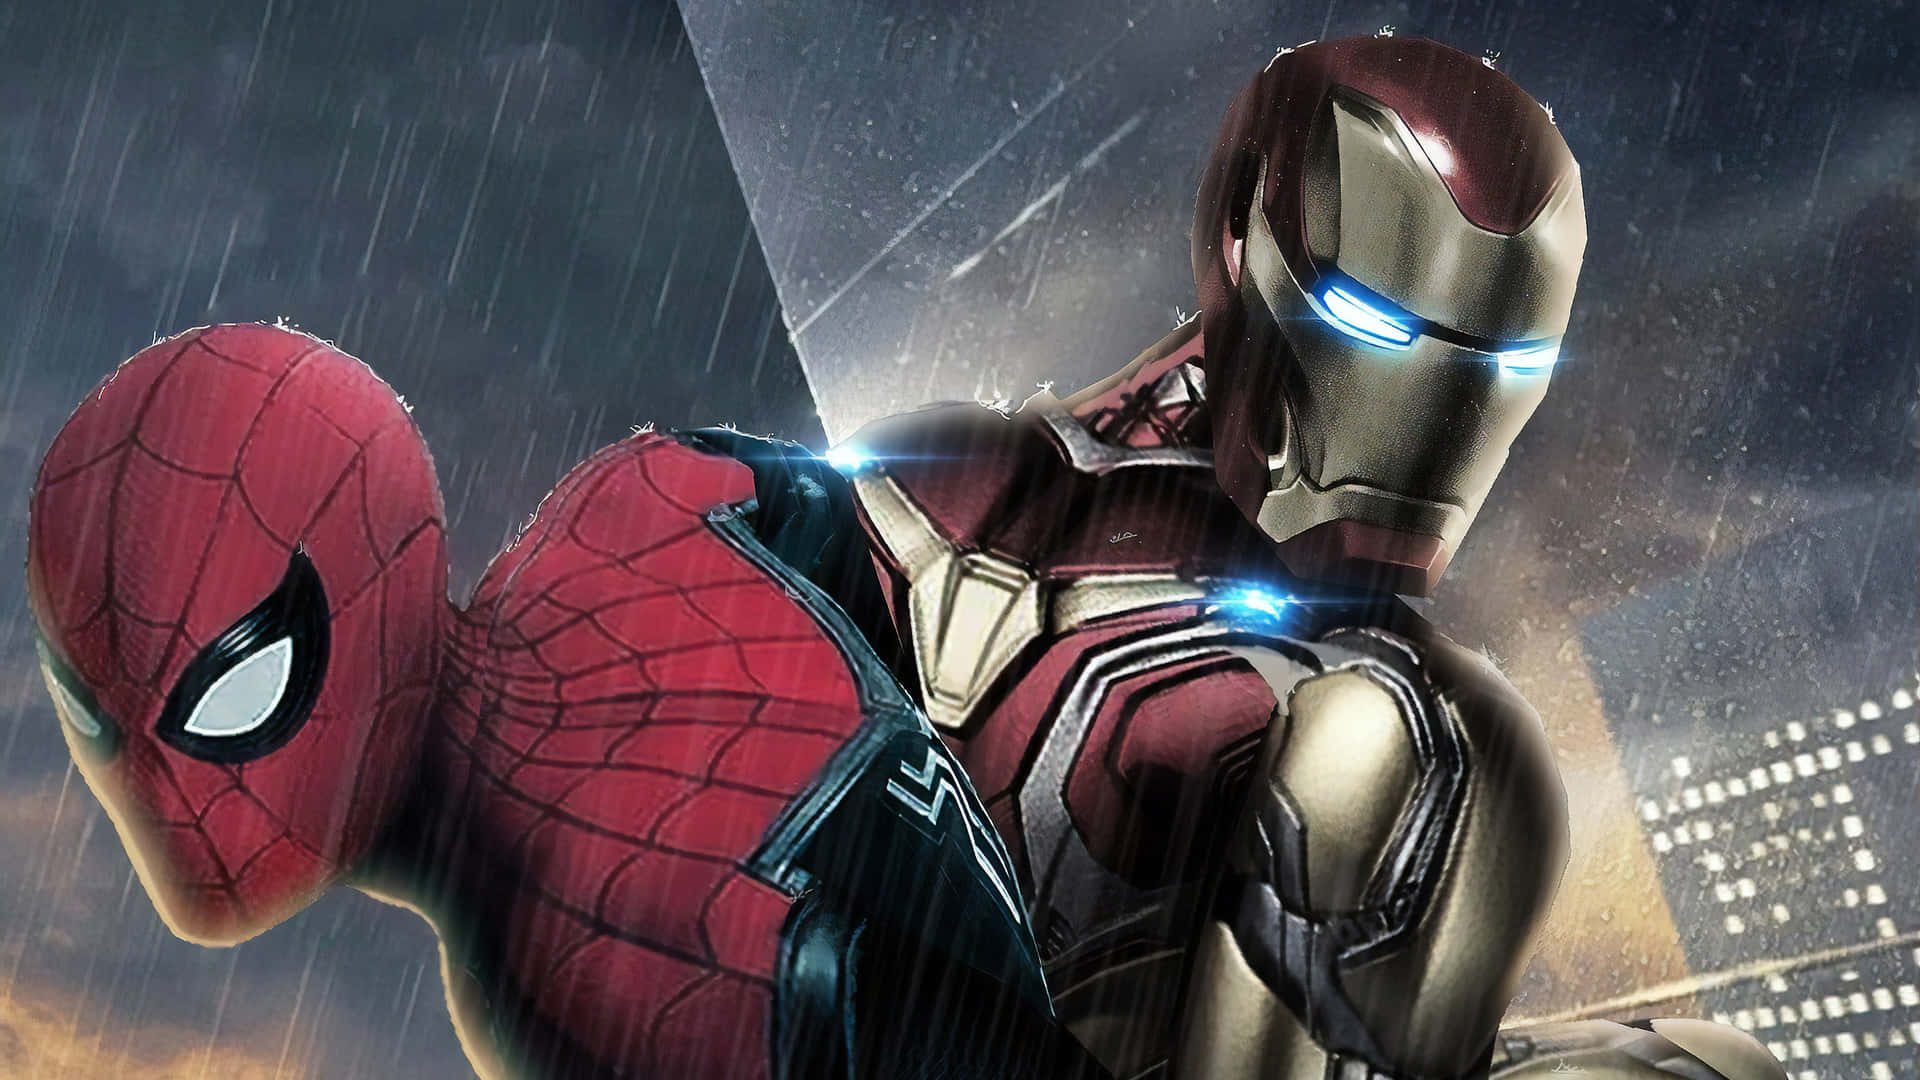 Dassuperhelden-duo Spiderman Und Iron Man Beschützt Die Stadt Gemeinsam. Wallpaper